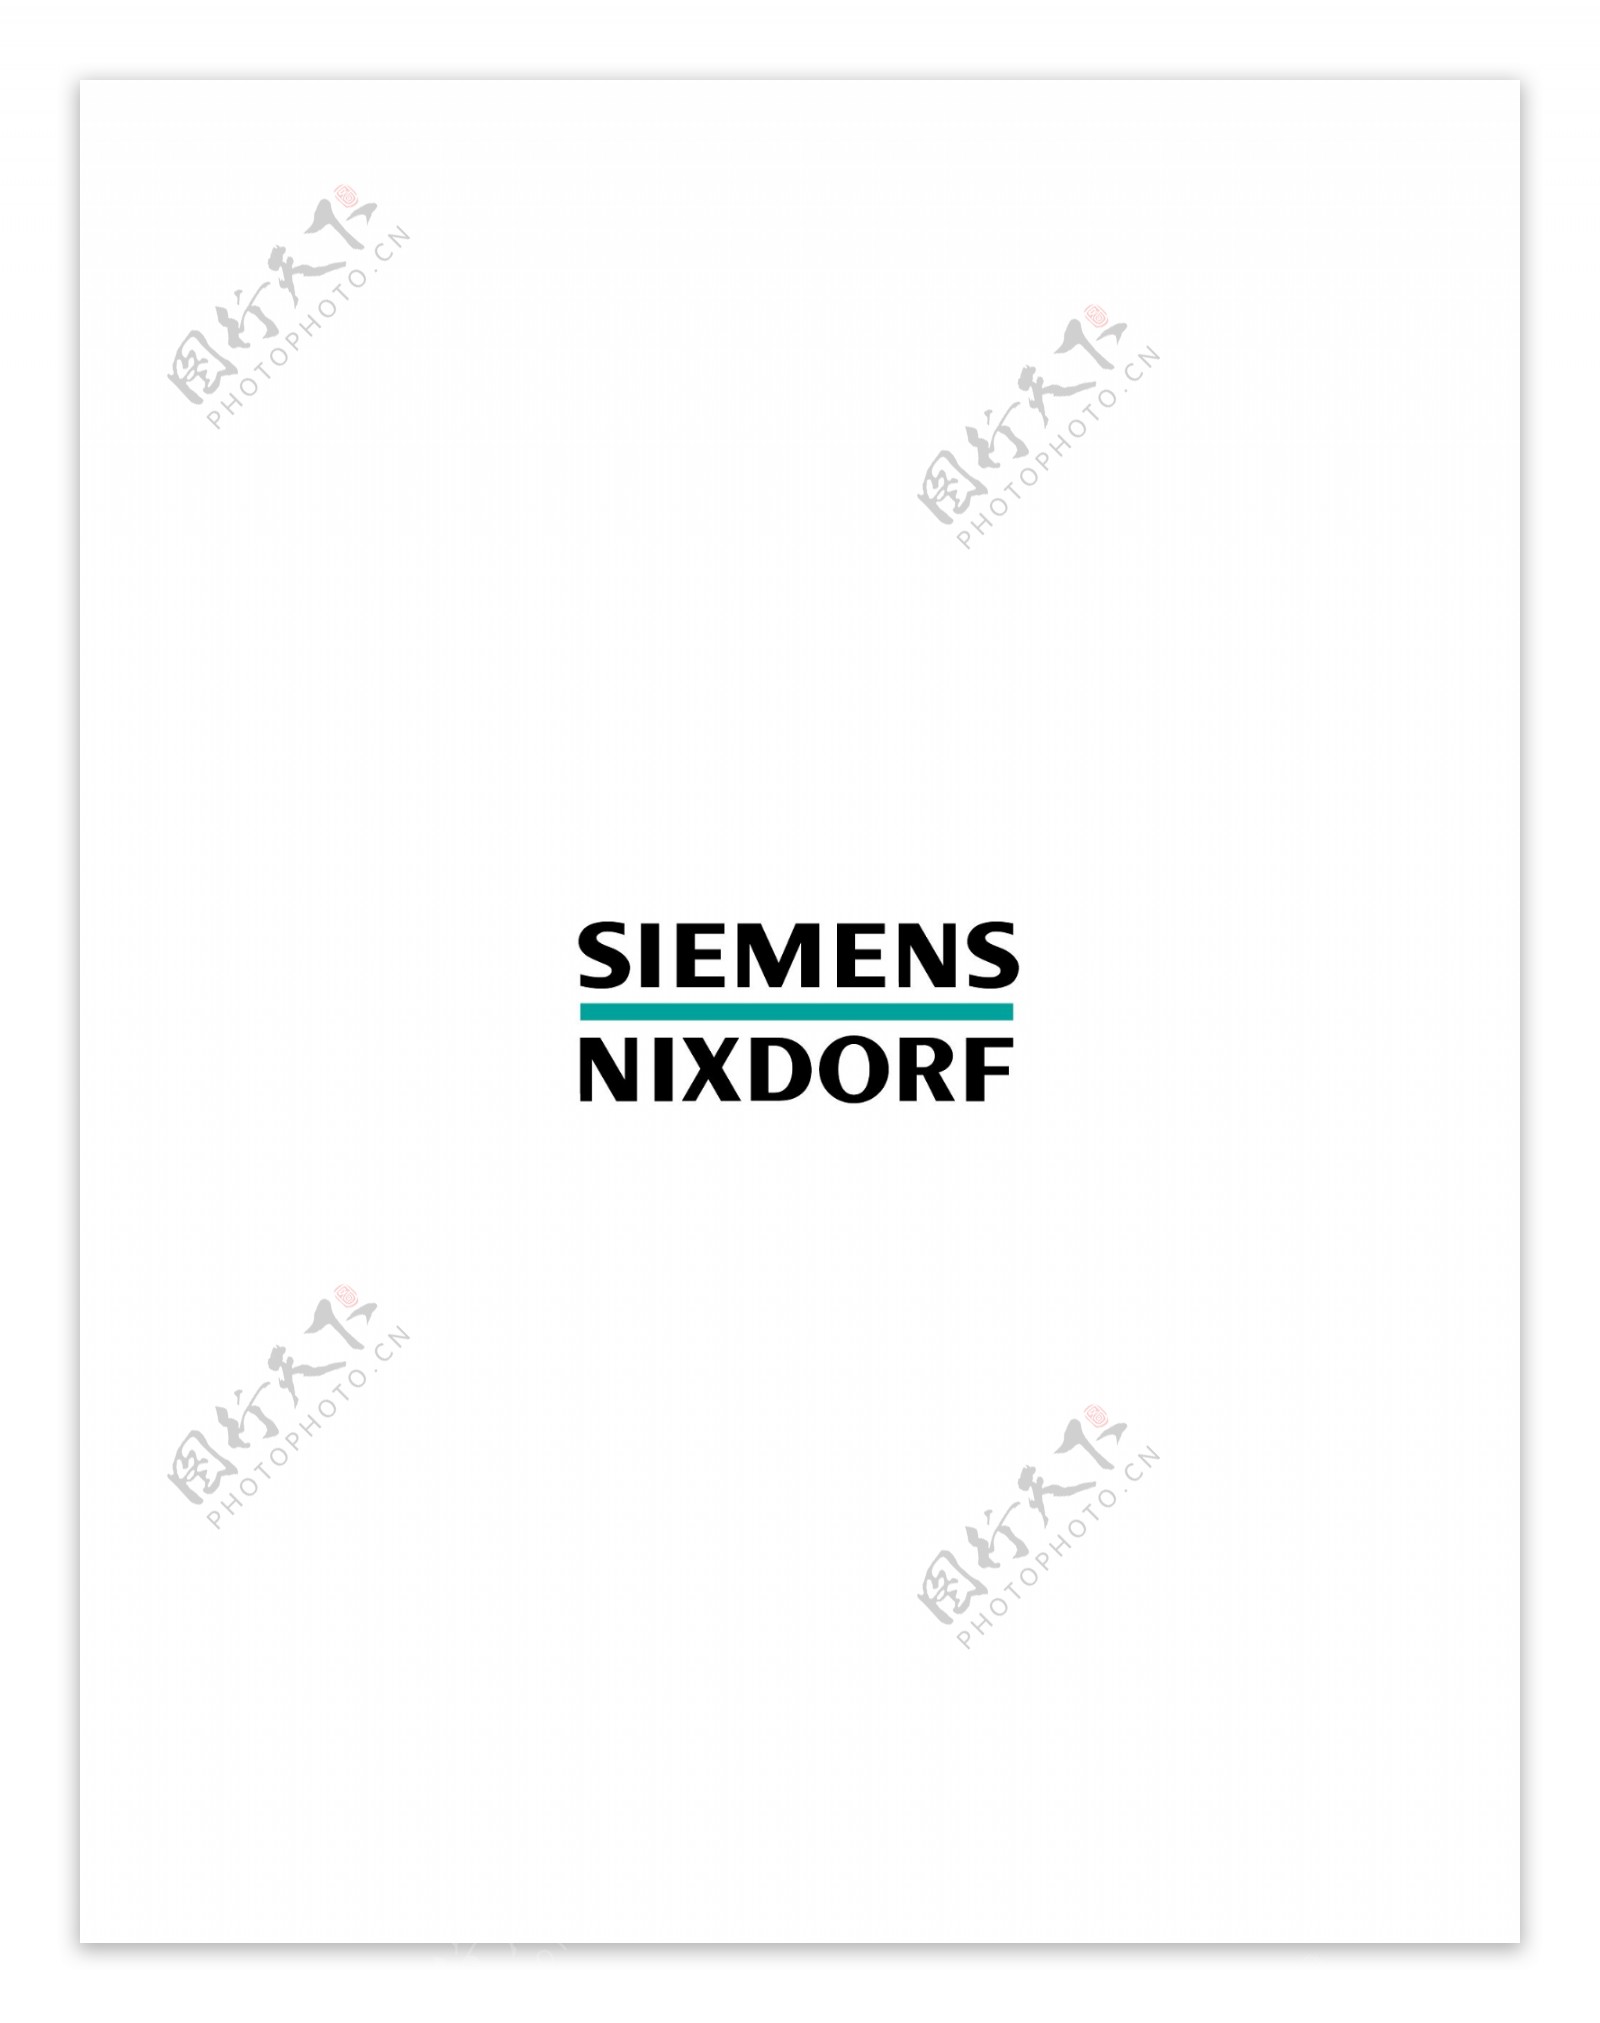 SiemensNixdorflogo设计欣赏足球队队徽LOGO设计SiemensNixdorf下载标志设计欣赏